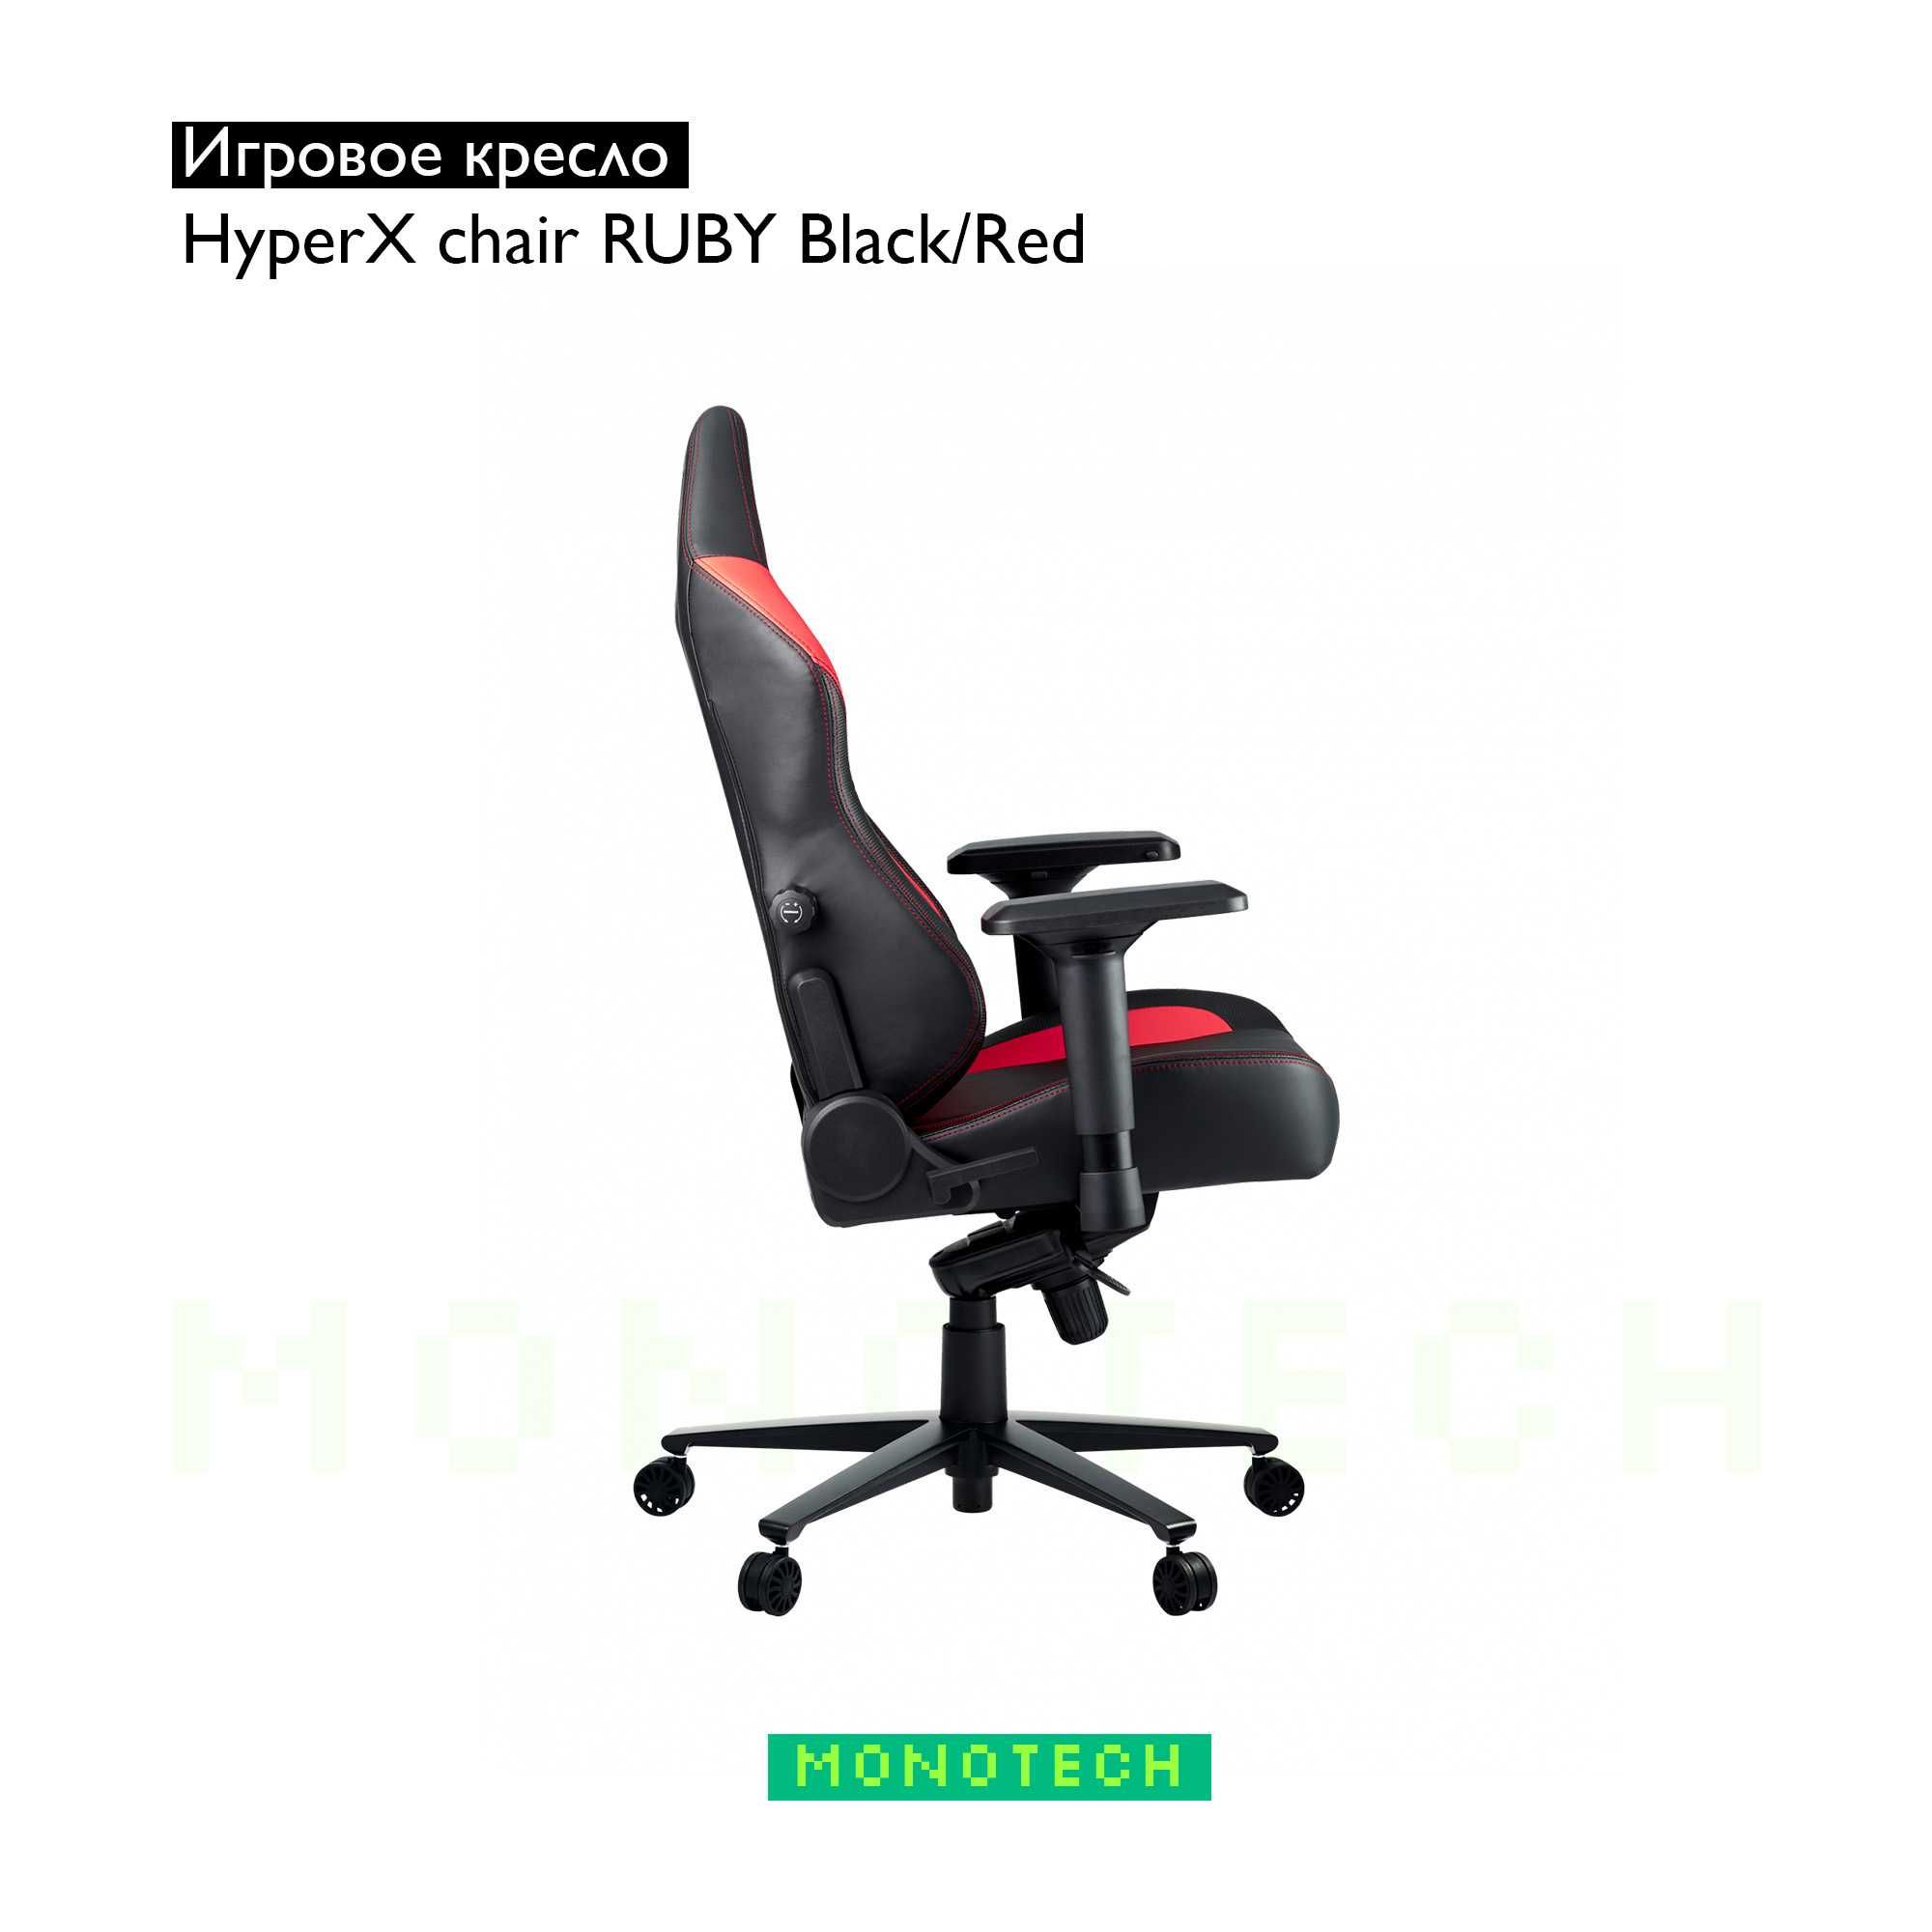 Игровое кресло HyperX chair RUBY Black/Red